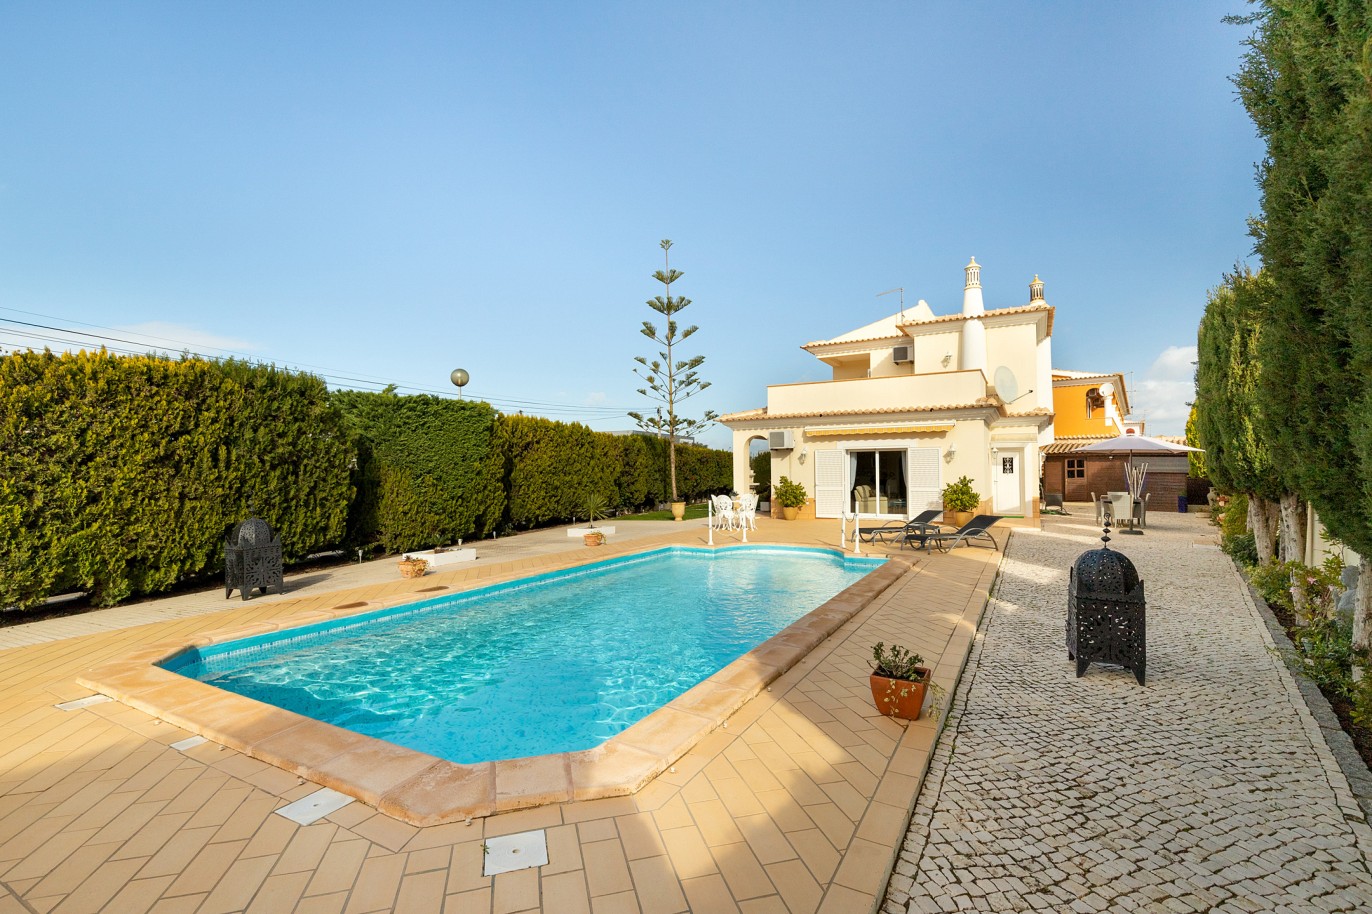 Fantástica moradia V3 com piscina, para venda em Algoz, Algarve_215673